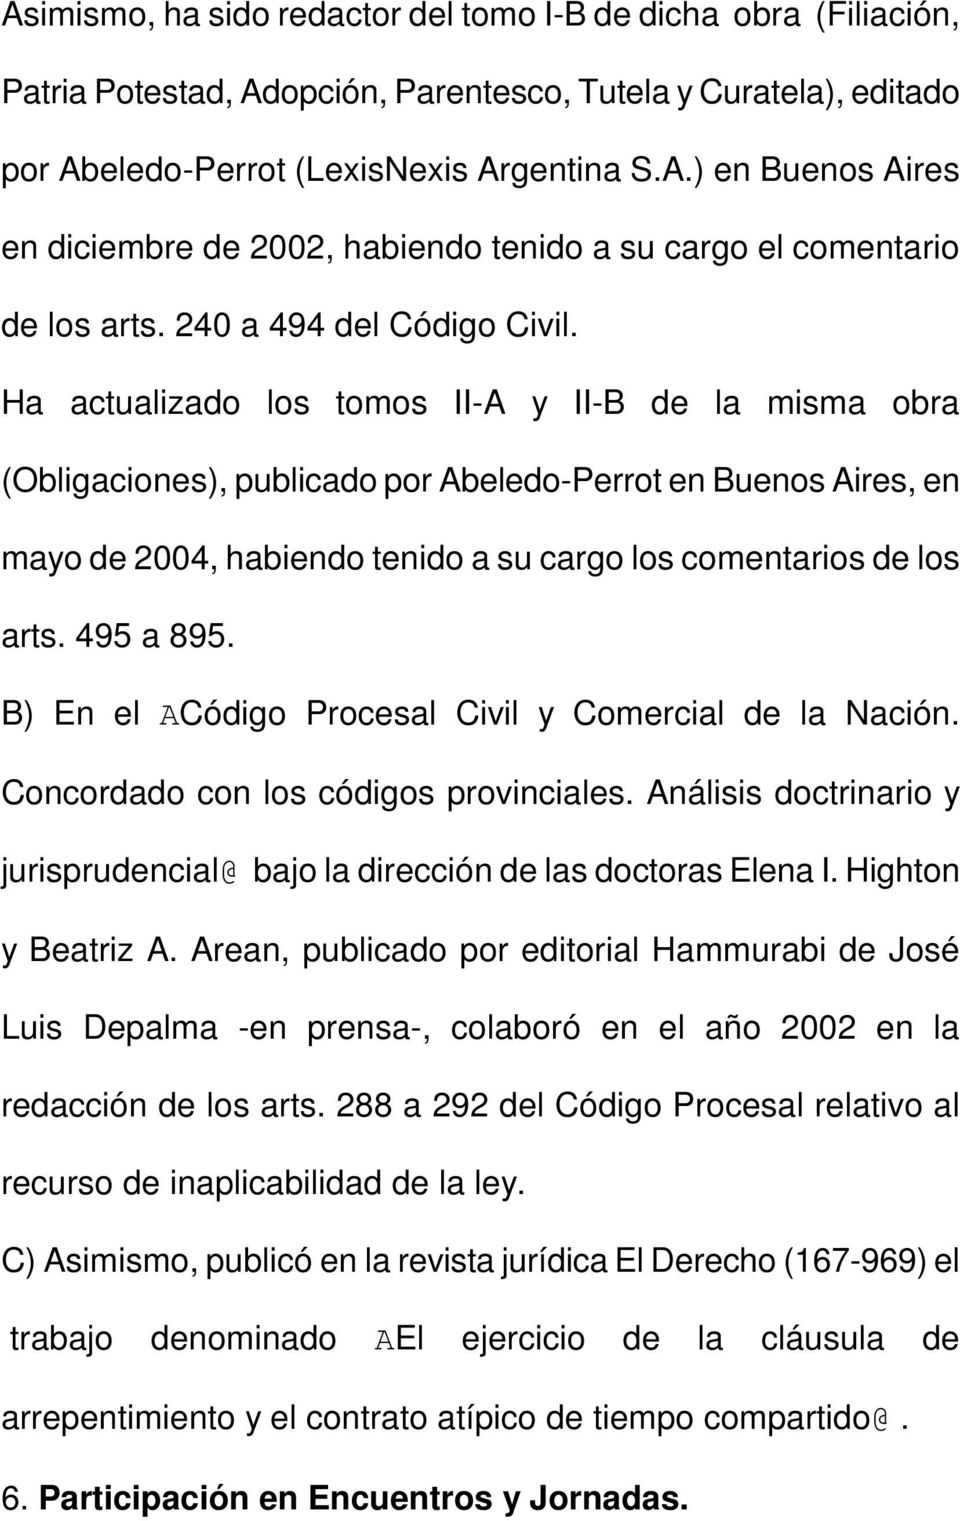 Ha actualizado los tomos II-A y II-B de la misma obra (Obligaciones), publicado por Abeledo-Perrot en Buenos Aires, en mayo de 2004, habiendo tenido a su cargo los comentarios de los arts. 495 a 895.